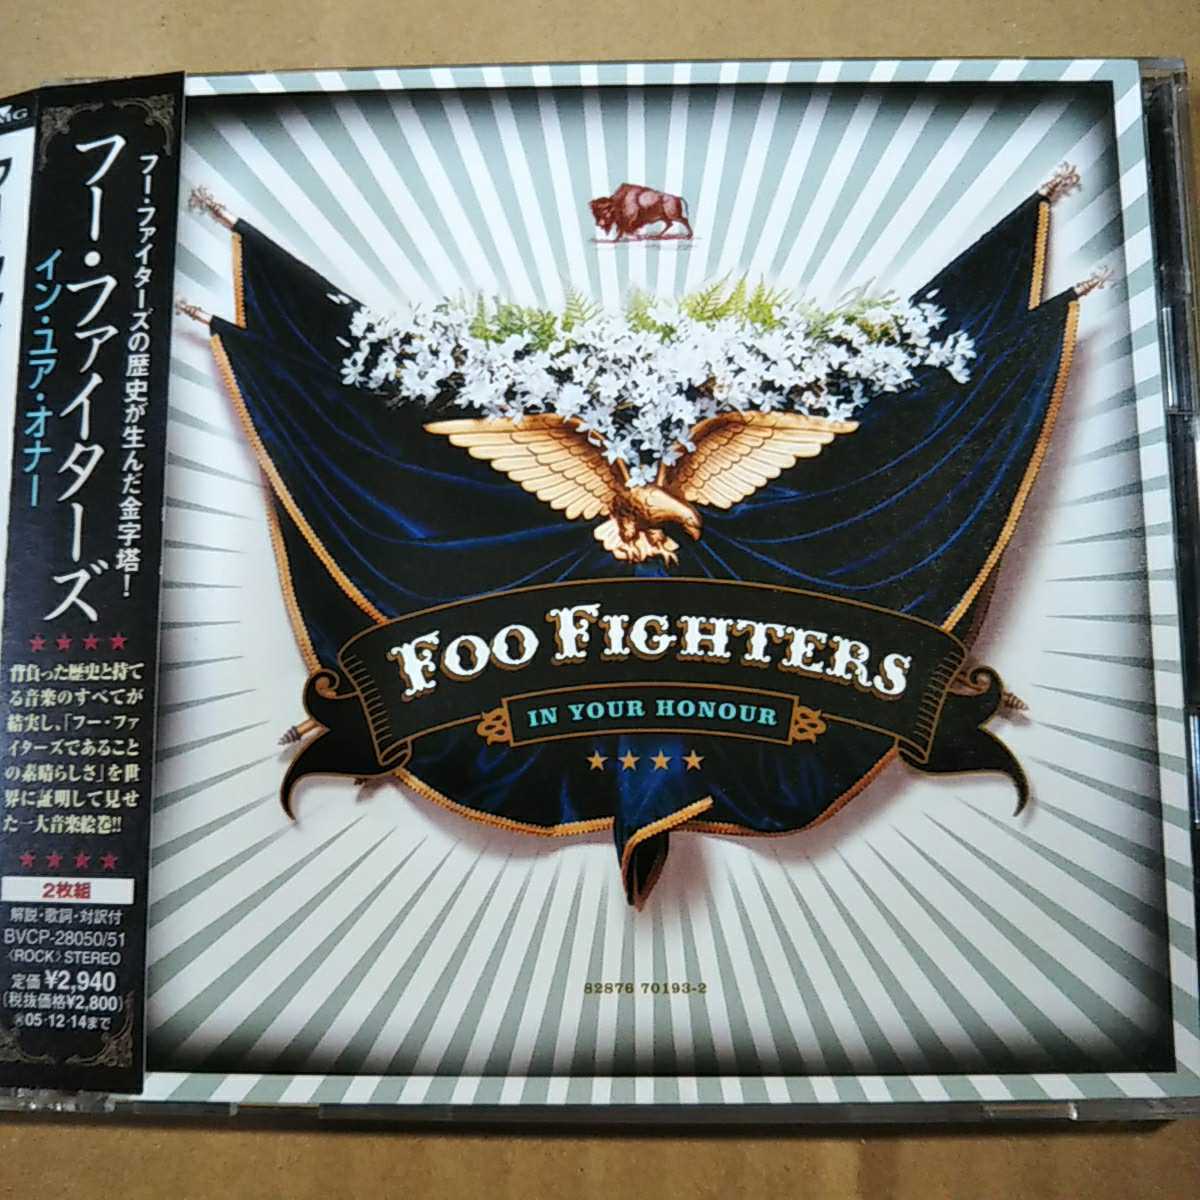 中古CD FOO FIGHTERS / フー・ファイターズ『IN YOUR HONOUR』国内盤/帯有り/2枚組 BVCP-28050/51【1497】